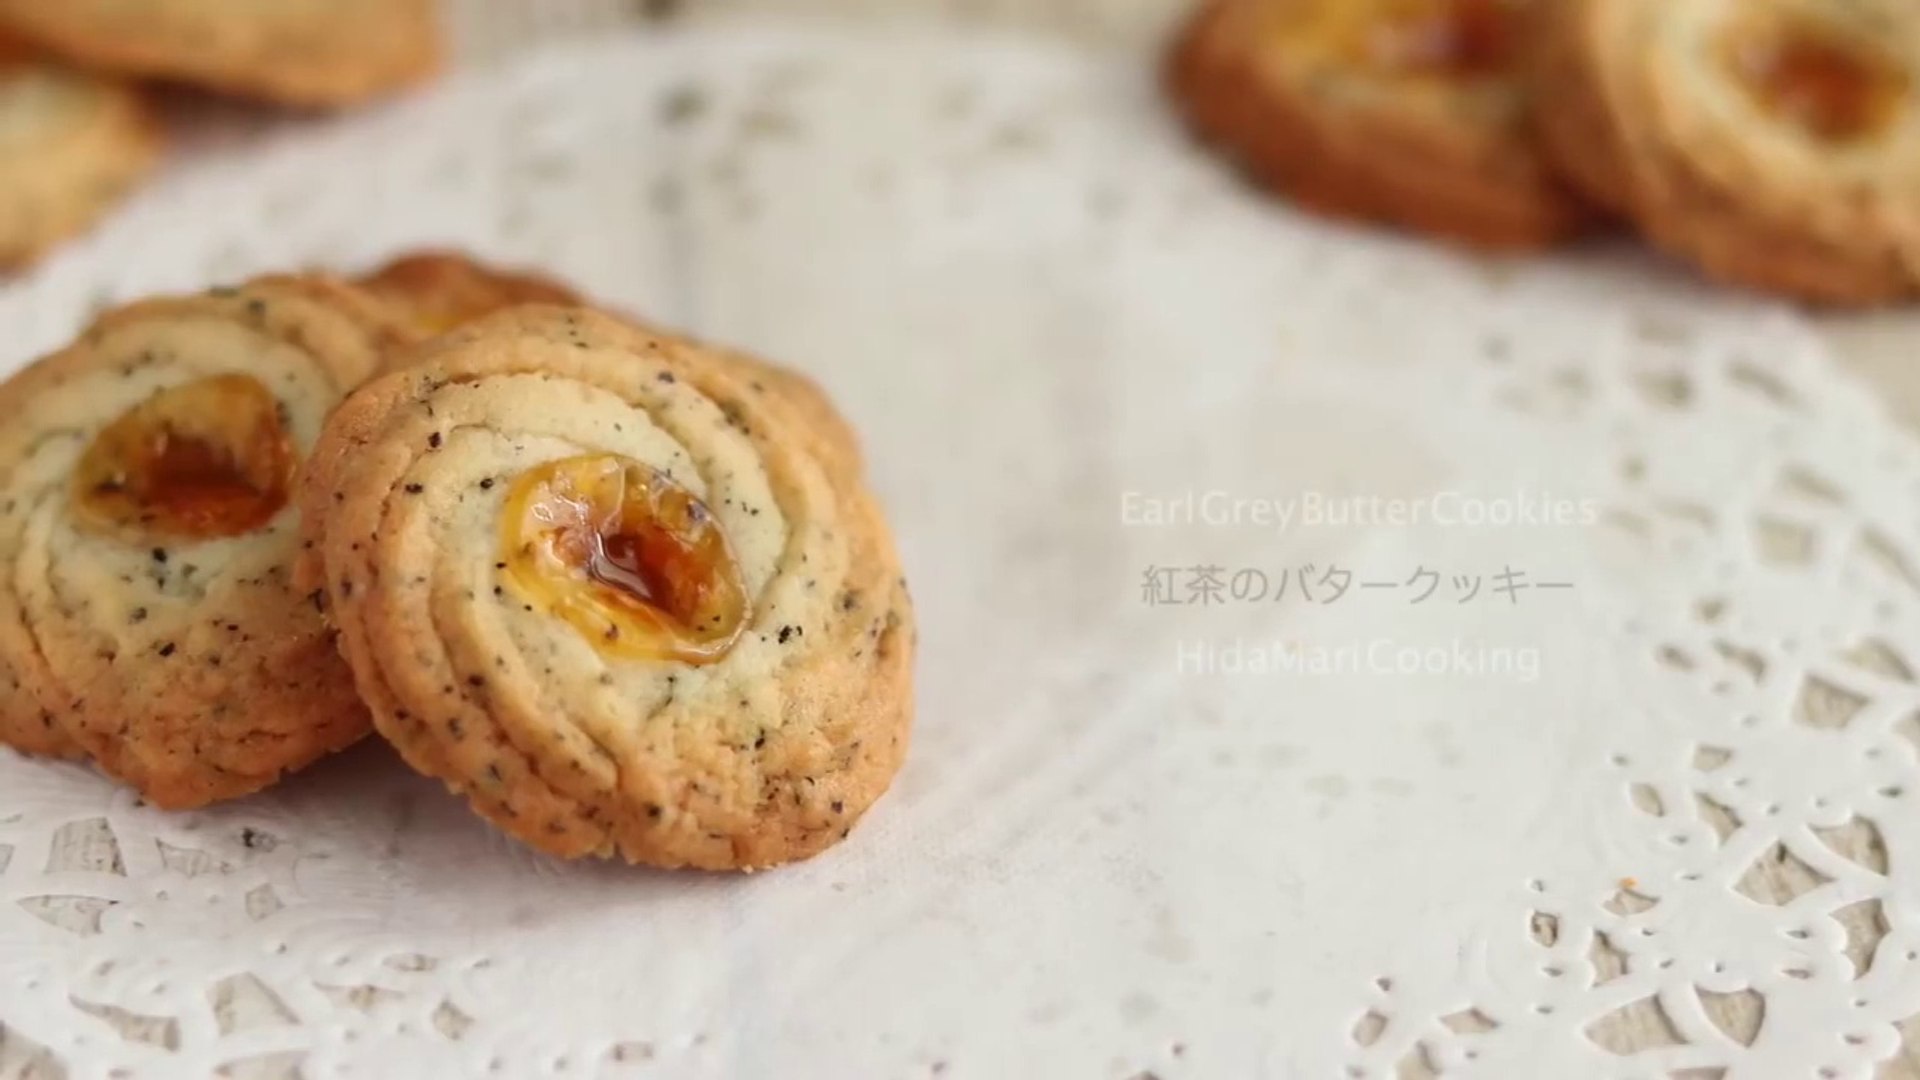 紅茶の絞り出しバタークッキー サクッと軽い食感 Squeezed Butter Cookie Hidamari Cooking Video Dailymotion